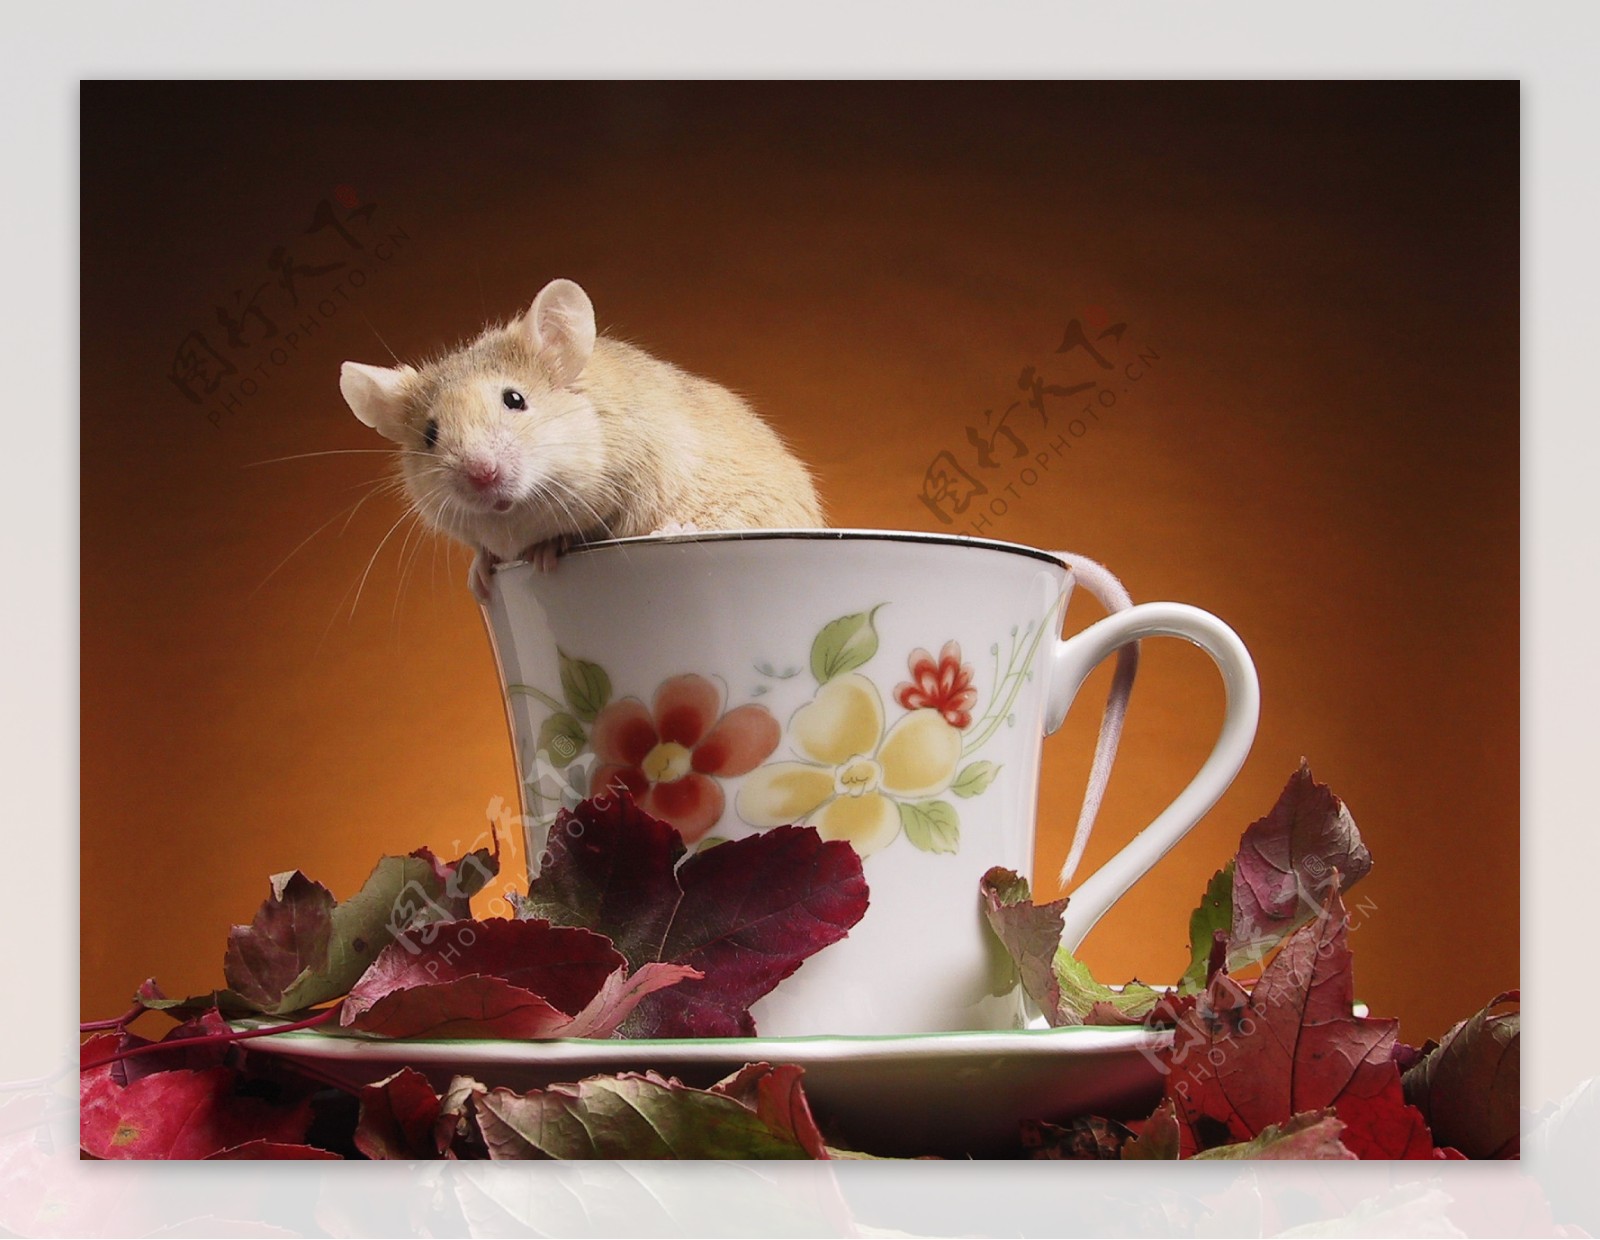 躲在茶杯里的小老鼠图片